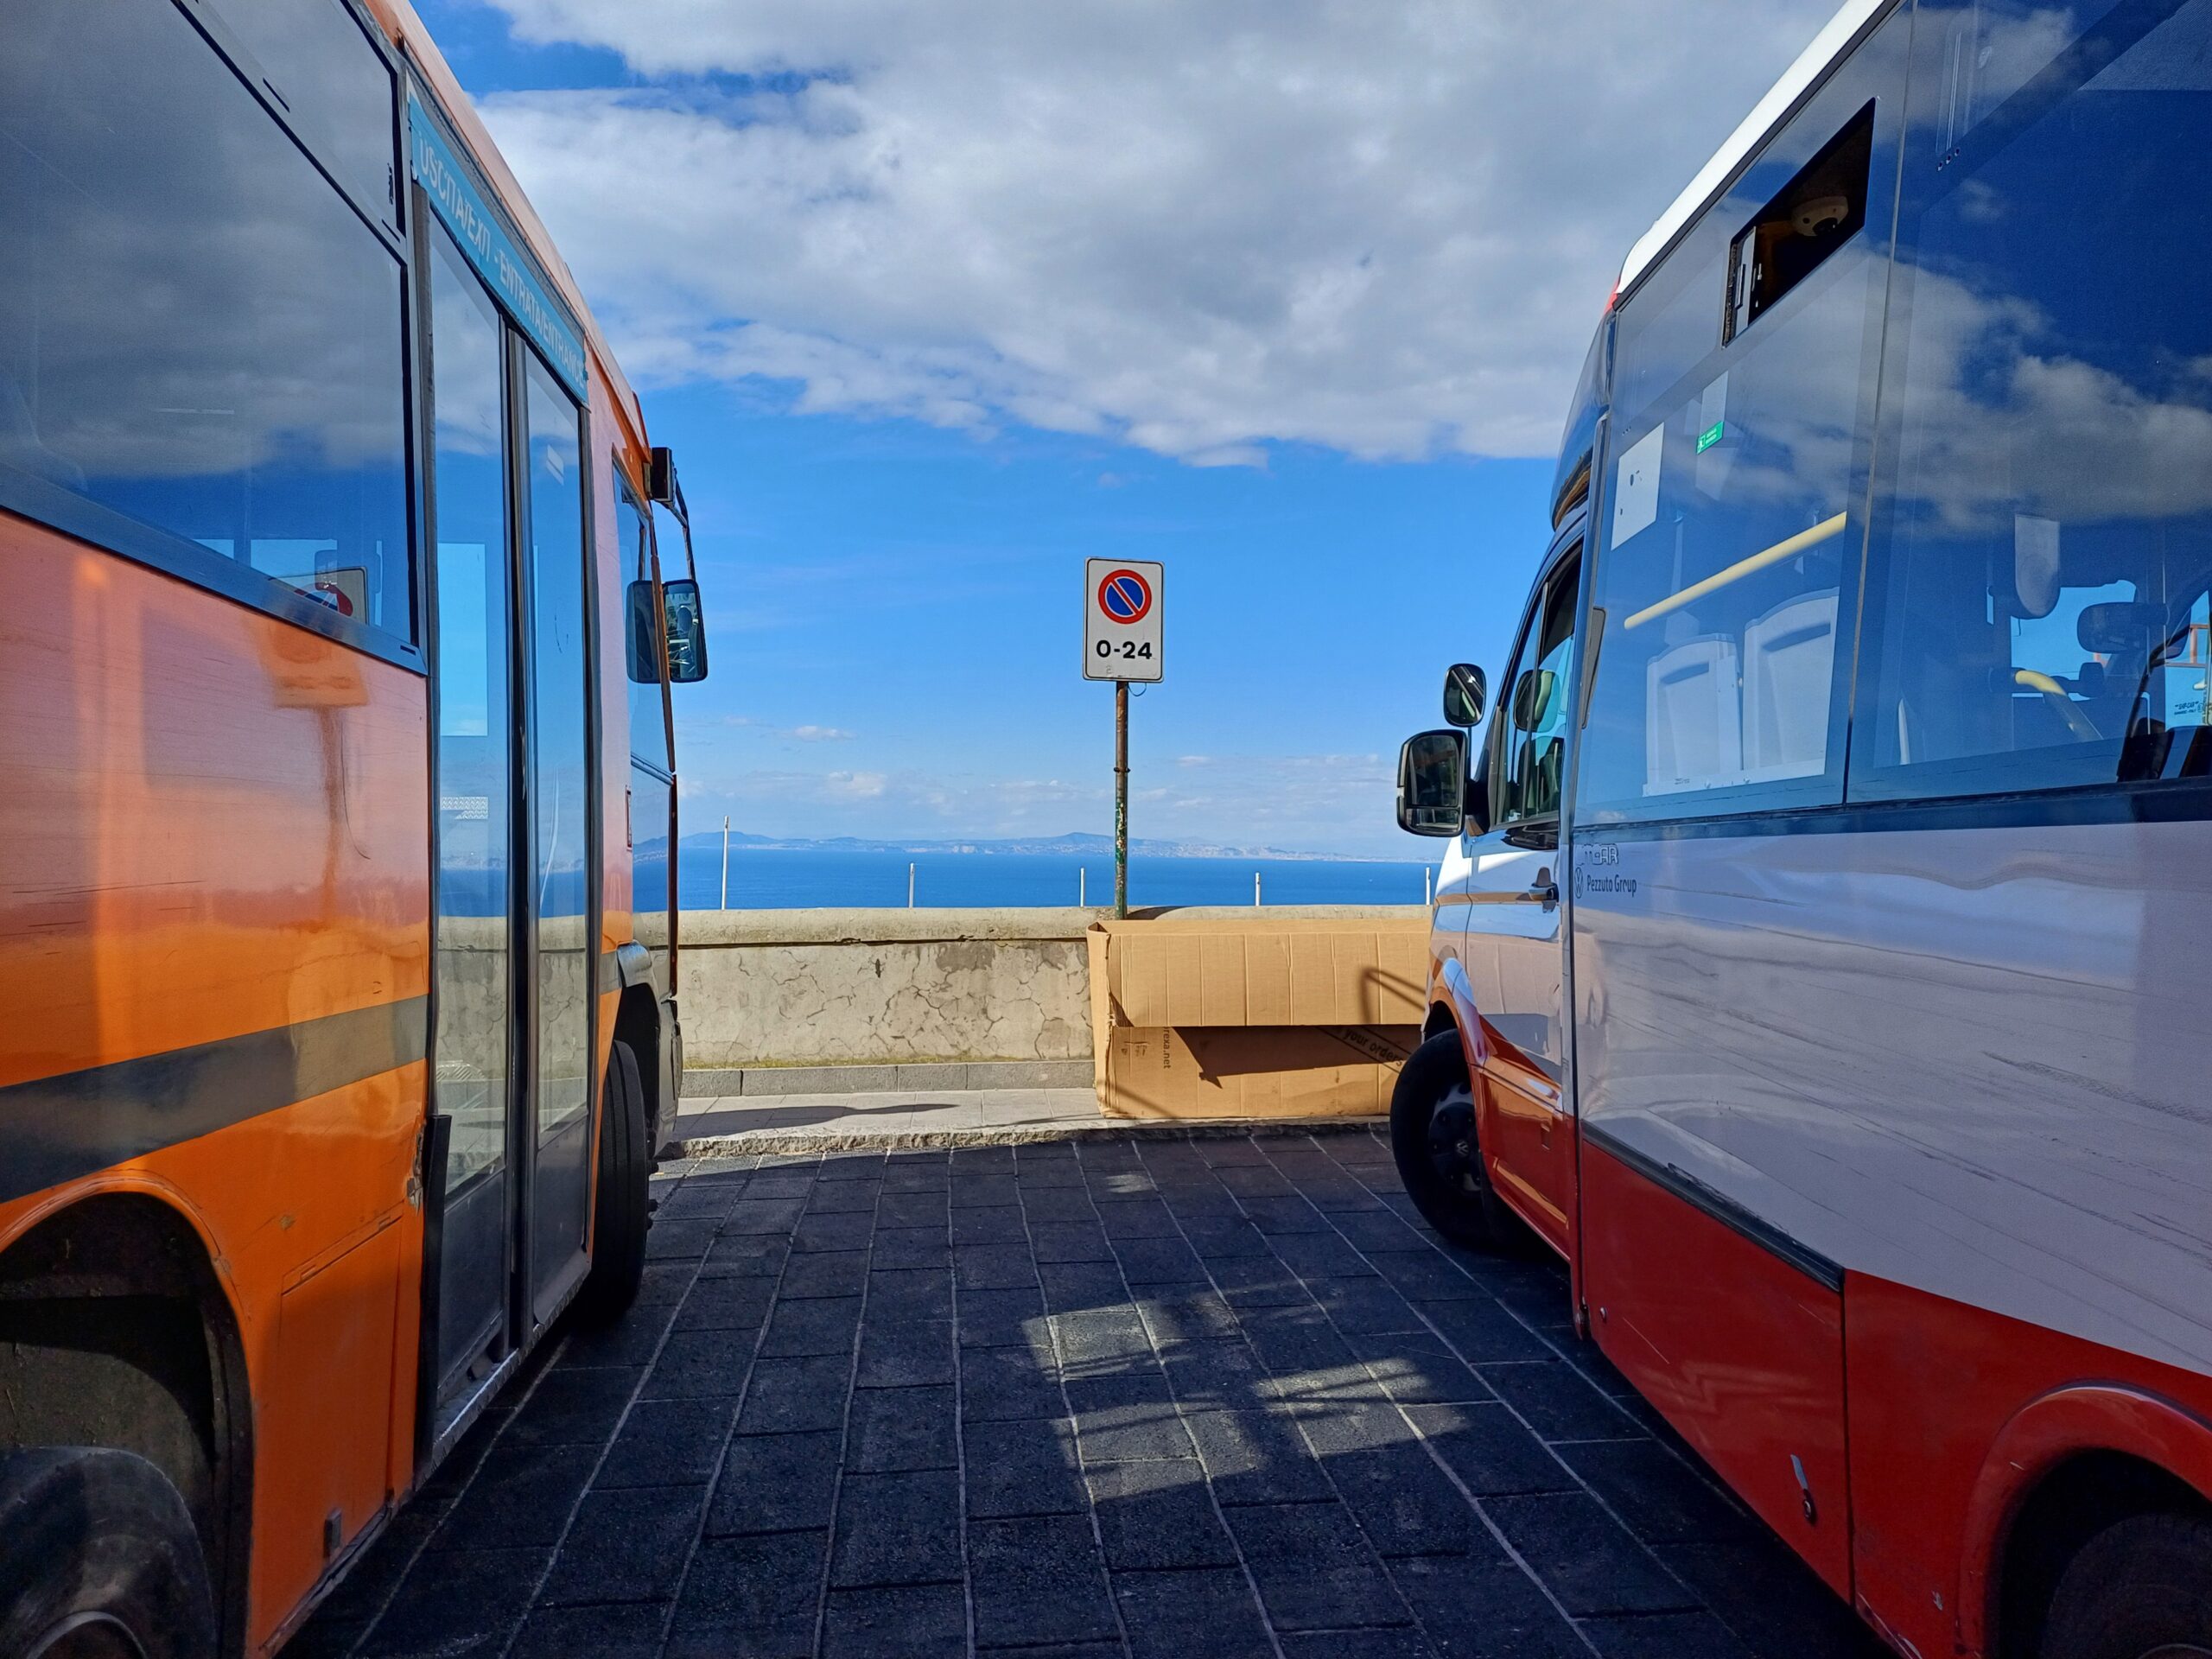 Durante i giorni del G7 biglietteria di Capri chiusa e passeggeri dei bus Atc costretti a pagare 2,90 euro